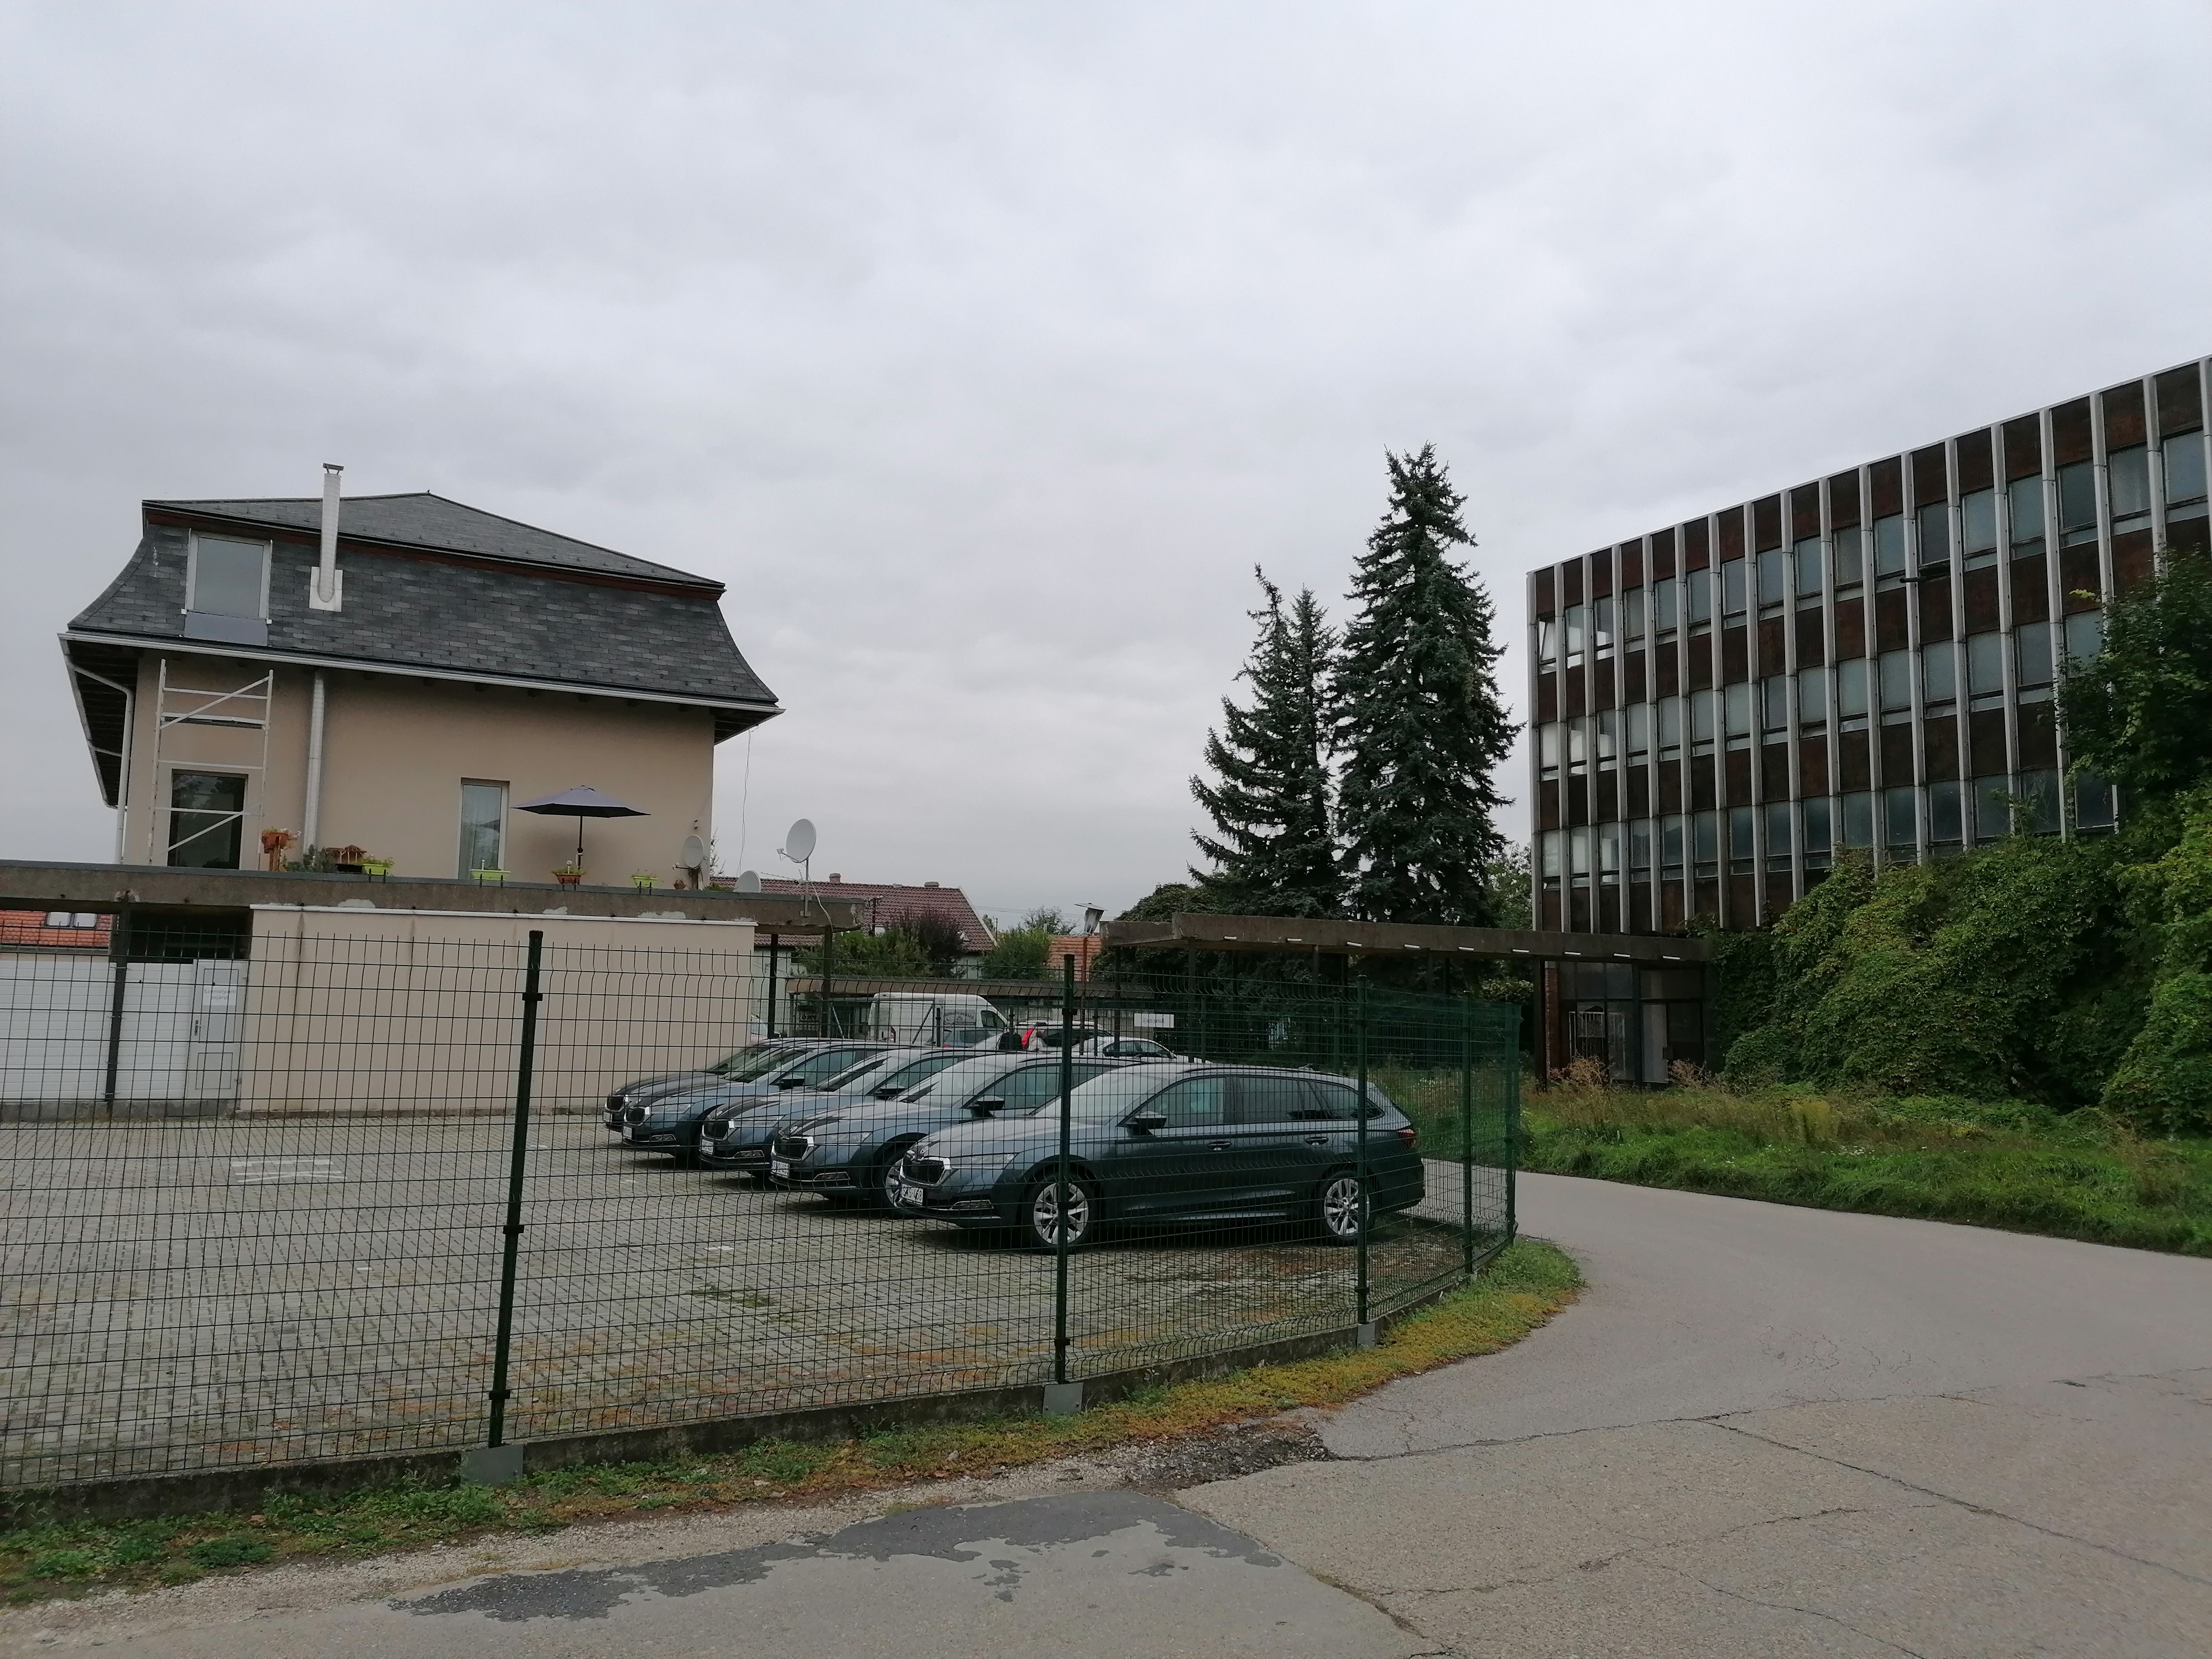 Az épületegyüttes az egykori gyárterület felől, jobbra az irodatömb, balra az egyik átépített öltözőépület. A kettőt összekötő, nyitott árkád kivehető. Fotó: KD, 2021.09.29.